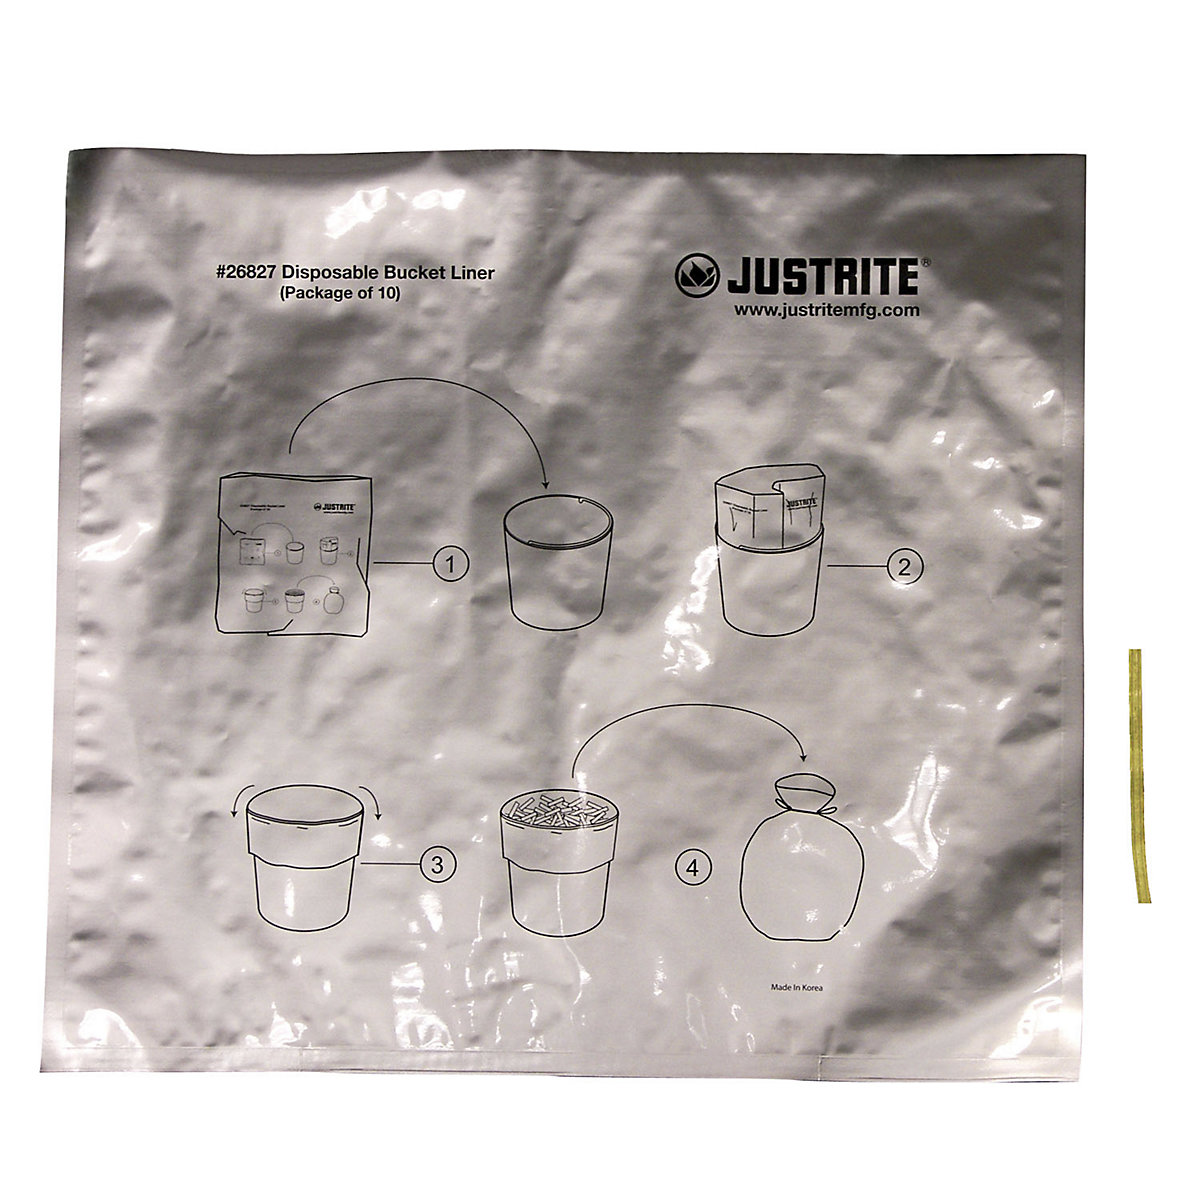 Posebne aluminijske vreće za otpad za stojeće pepeljare - Justrite